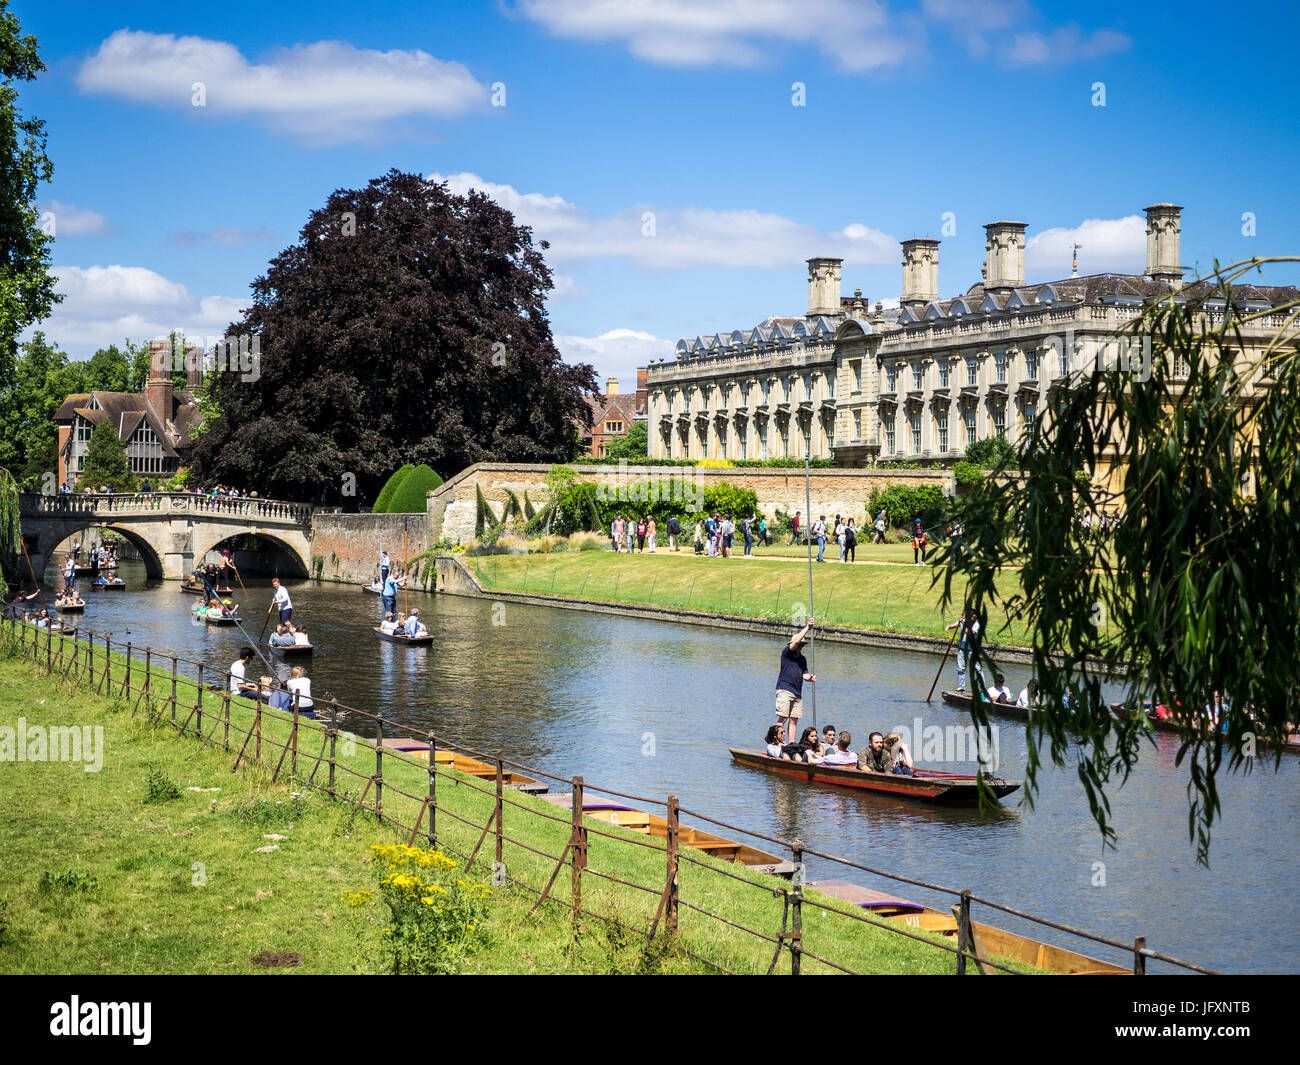 Cambridge Tourismus - Punting auf dem River Cam in Cambridge Großbritannien Stockfoto